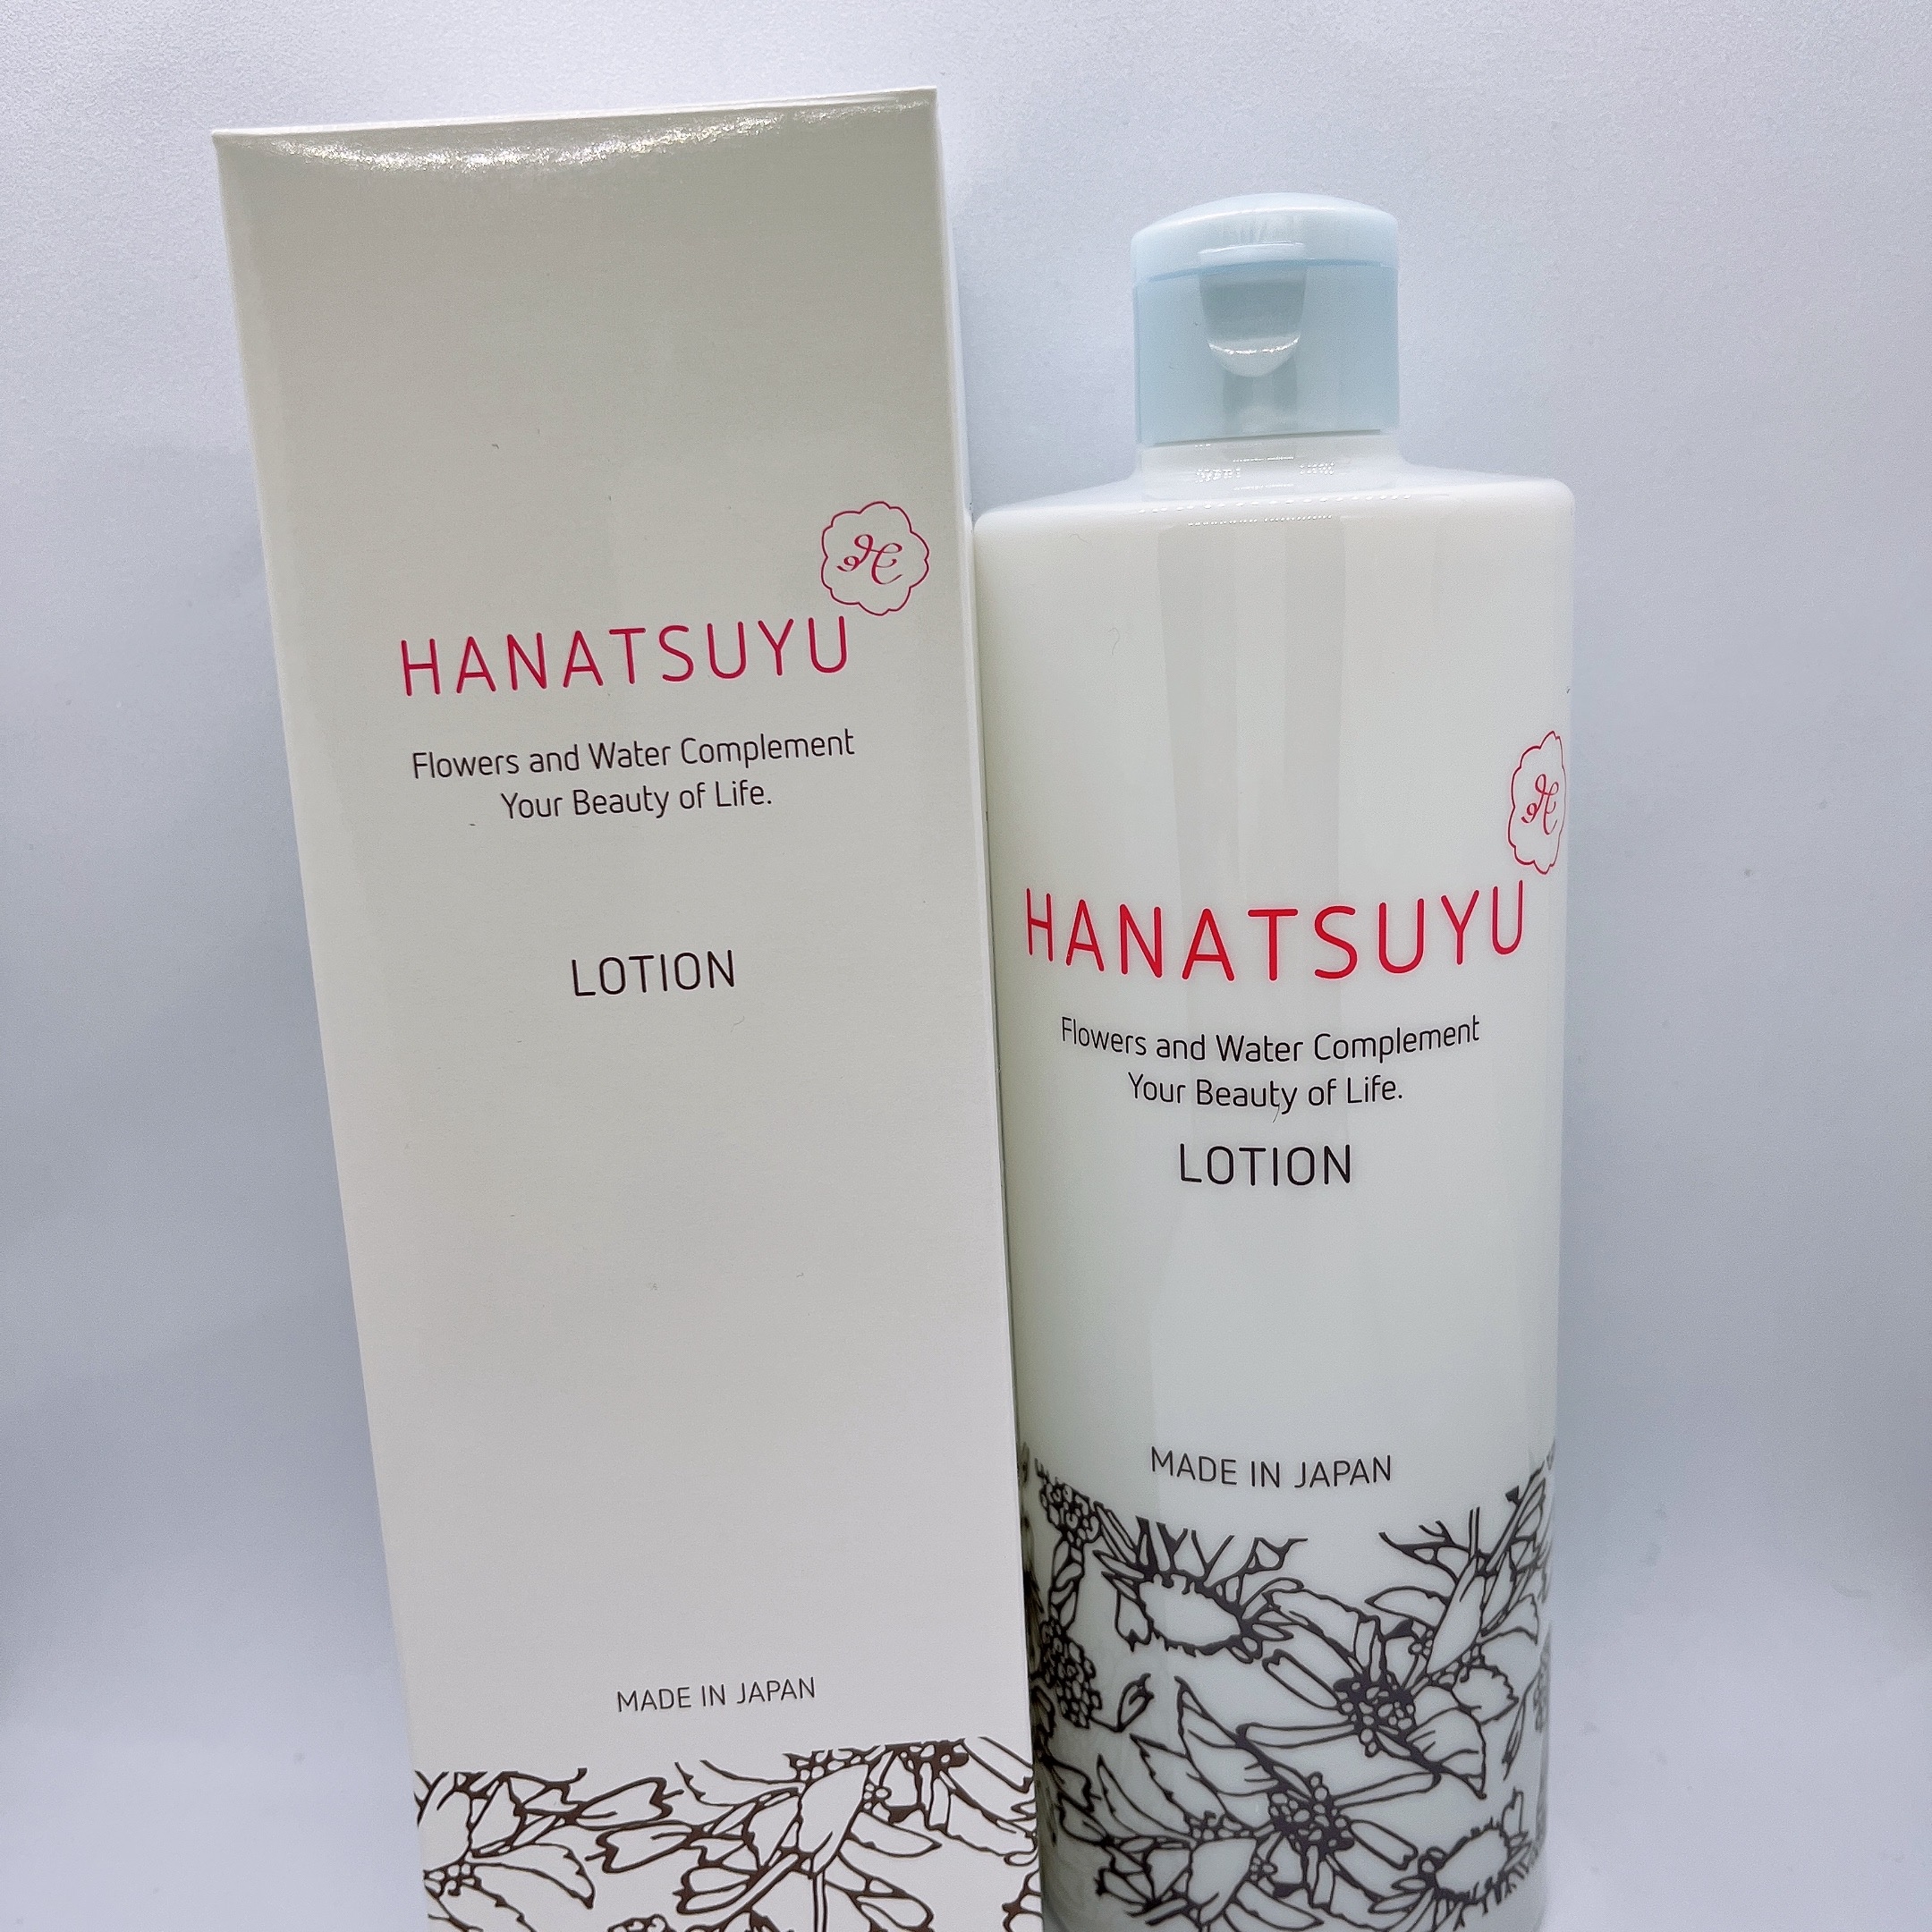 HANATSUYU(ハナツユ) 化粧水に関するまりたそさんの口コミ画像1